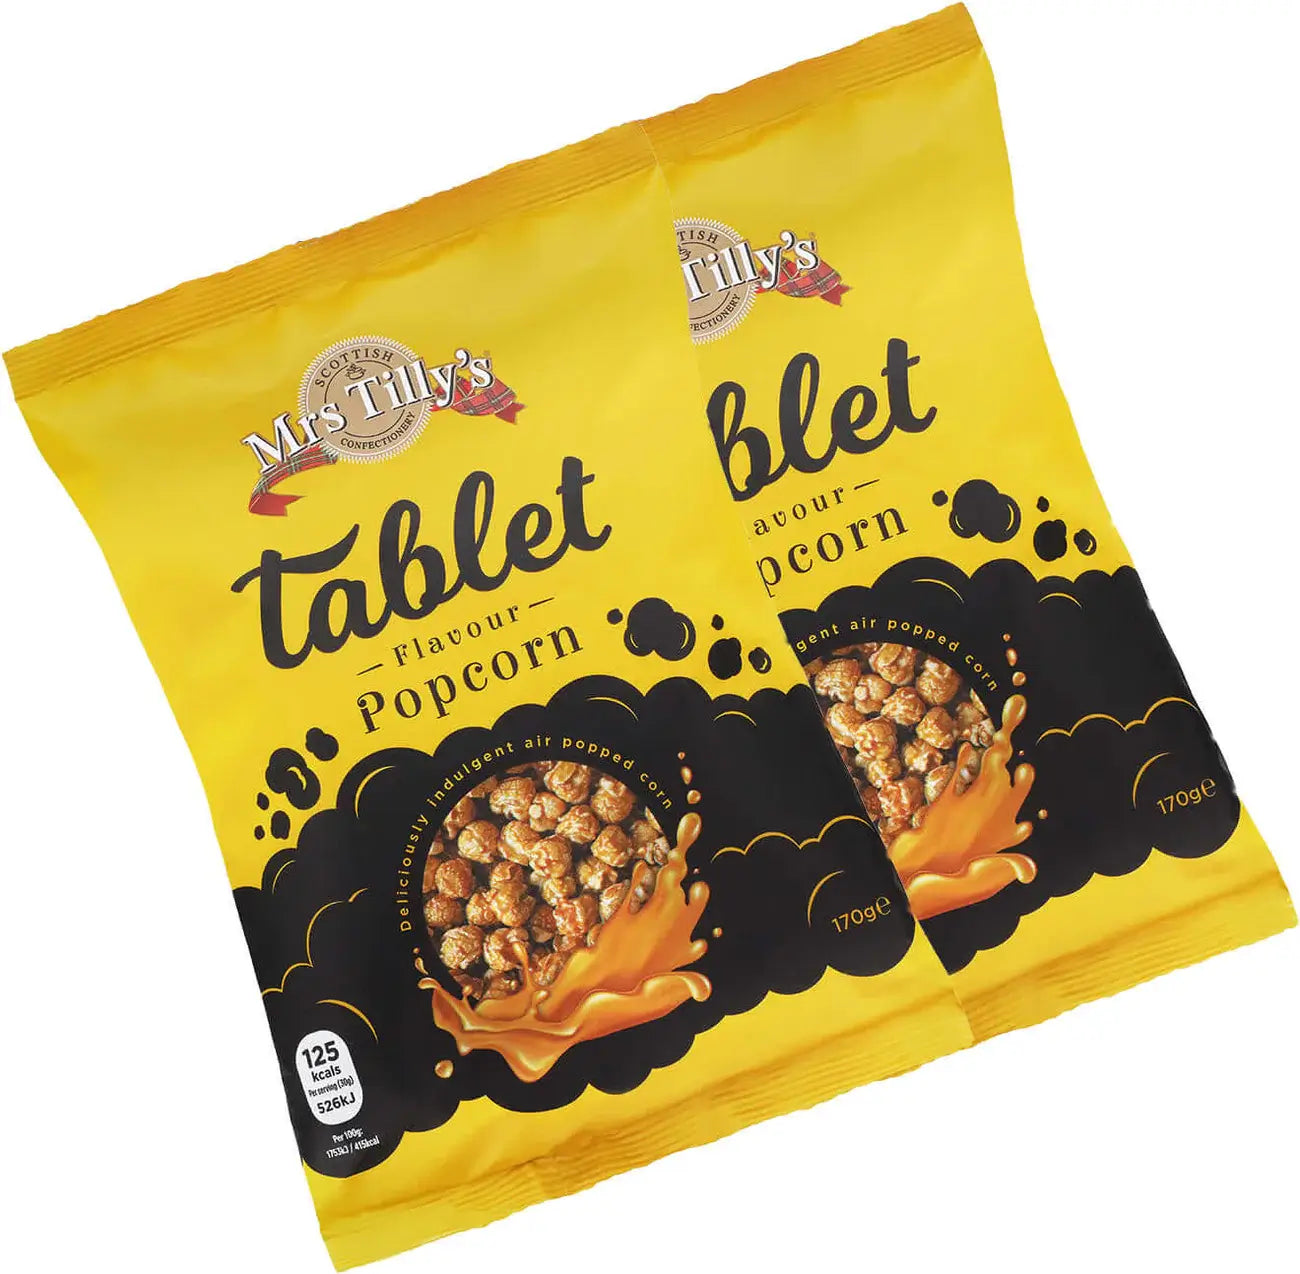 Mrs Tillys Tablet flavour Popcorn